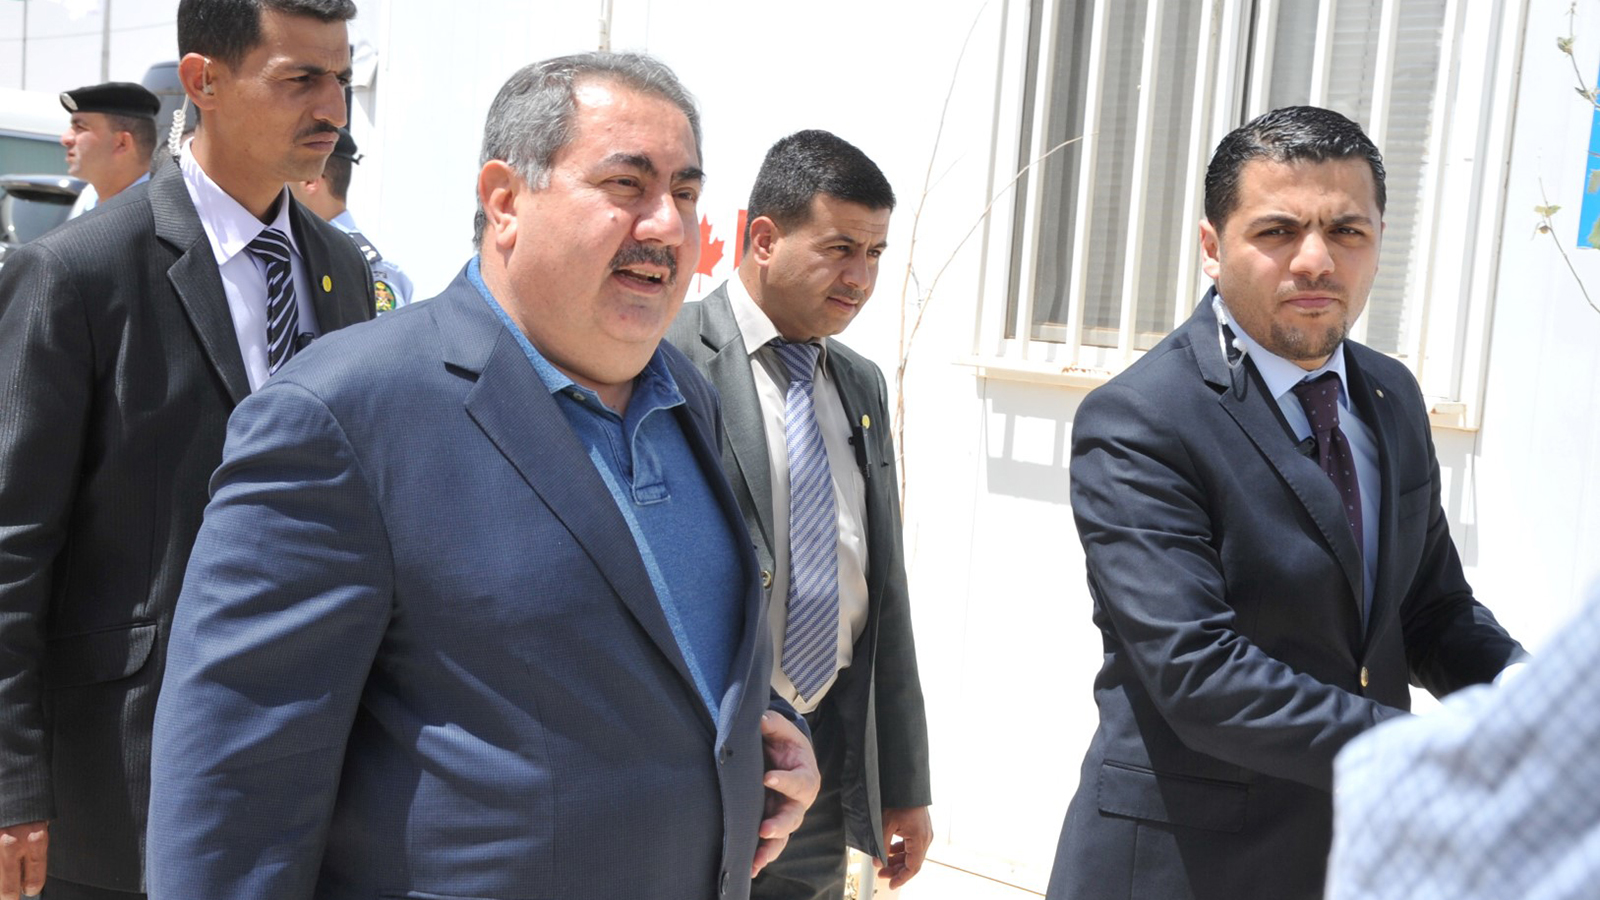 زيباري: الدستور العراقي يعترف بوجود إقليم كردستان وسلطاته وهم الآن يريدون محوه (الجزيرة-أرشيف)